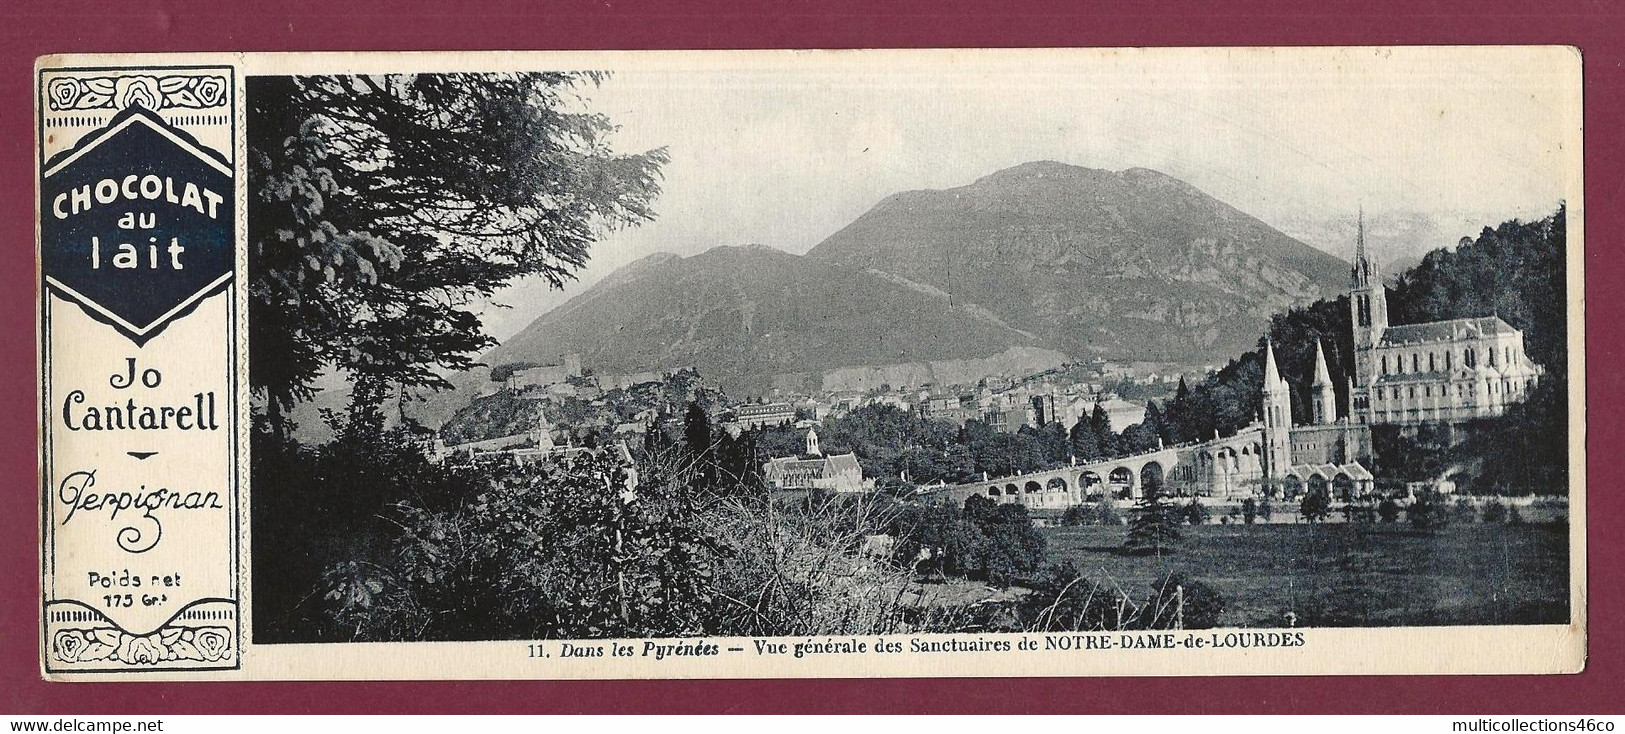 170222A - PUBLICITE CHOCOLAT AU LAIT JO CANTARELL PERPIGNAN - N°11 Pyrénées Sanctuaire NOTRE DAME DE LOURDES - Chocolat